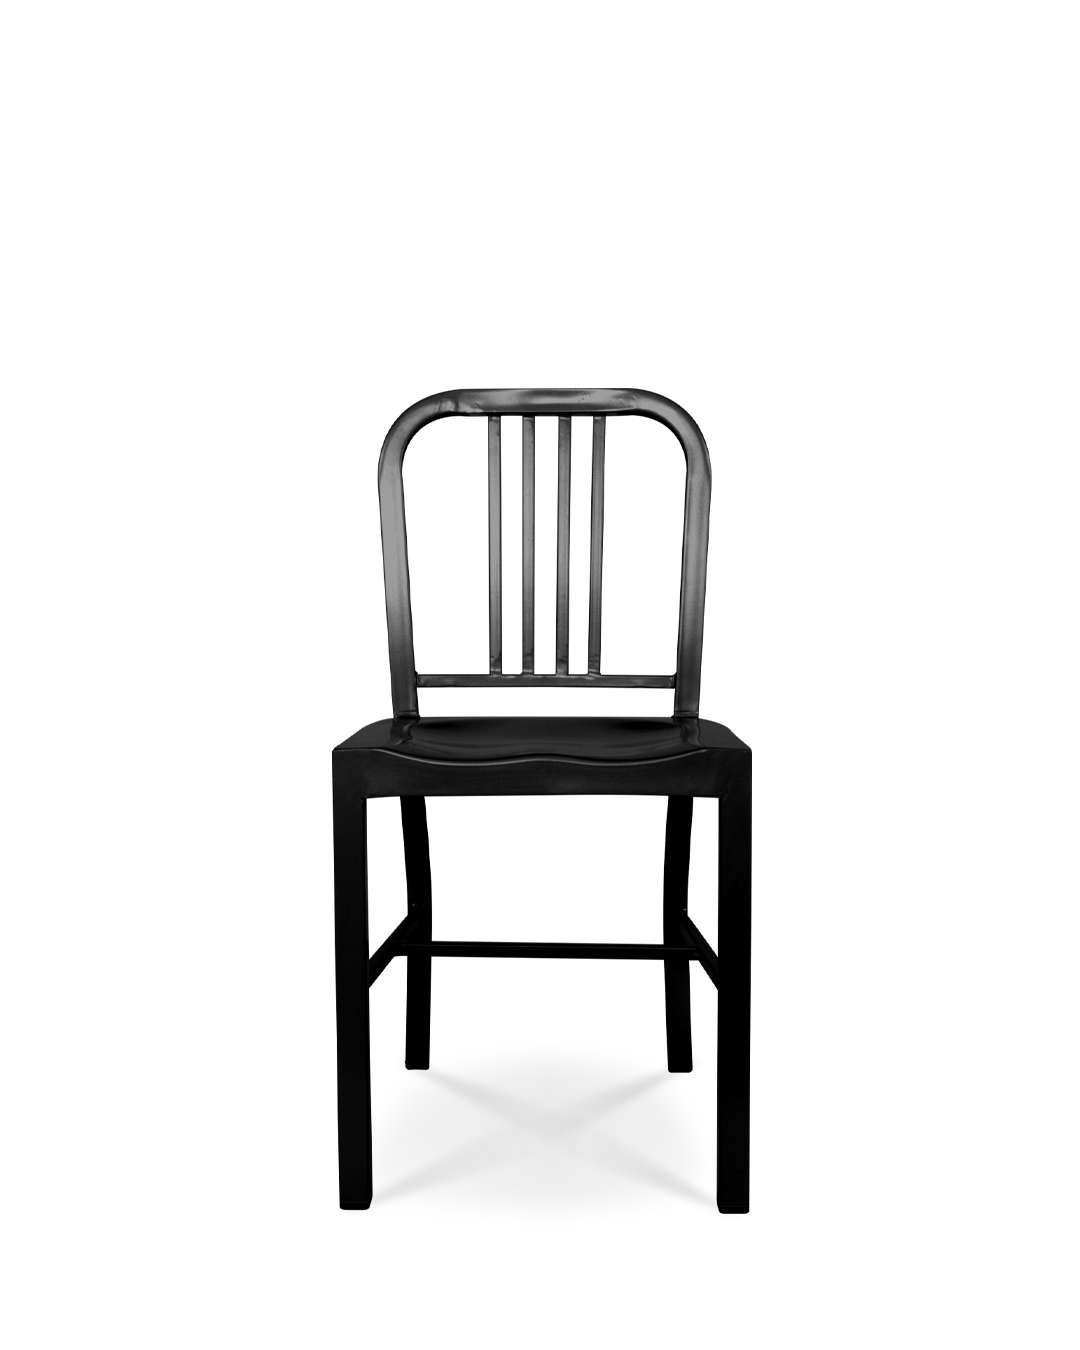 Navy Metal Chair Black